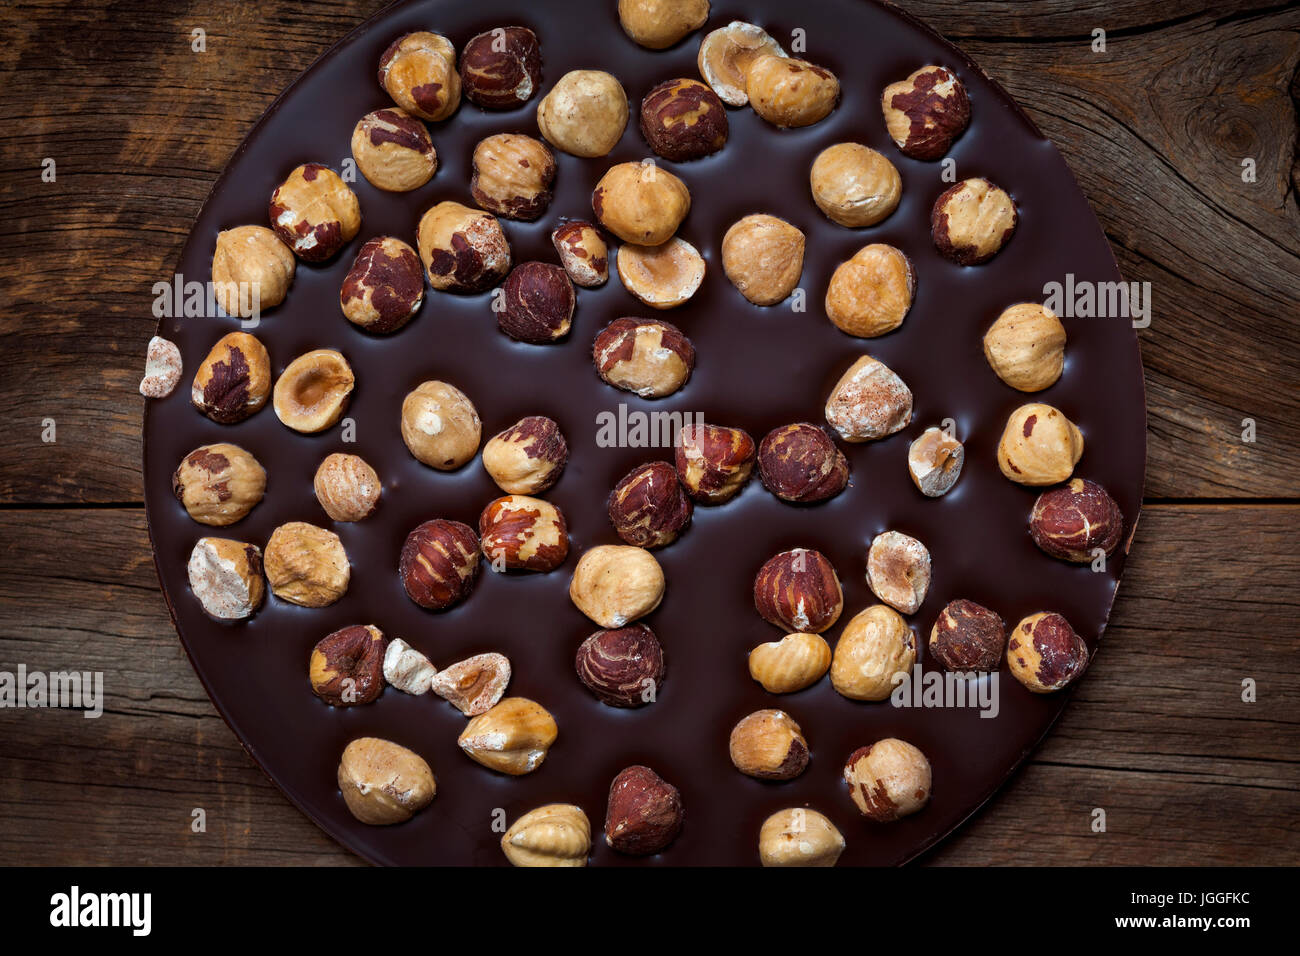 Artisanale ronde chocolat avec noisettes entières sur fond de bois rustique, overhead view Banque D'Images